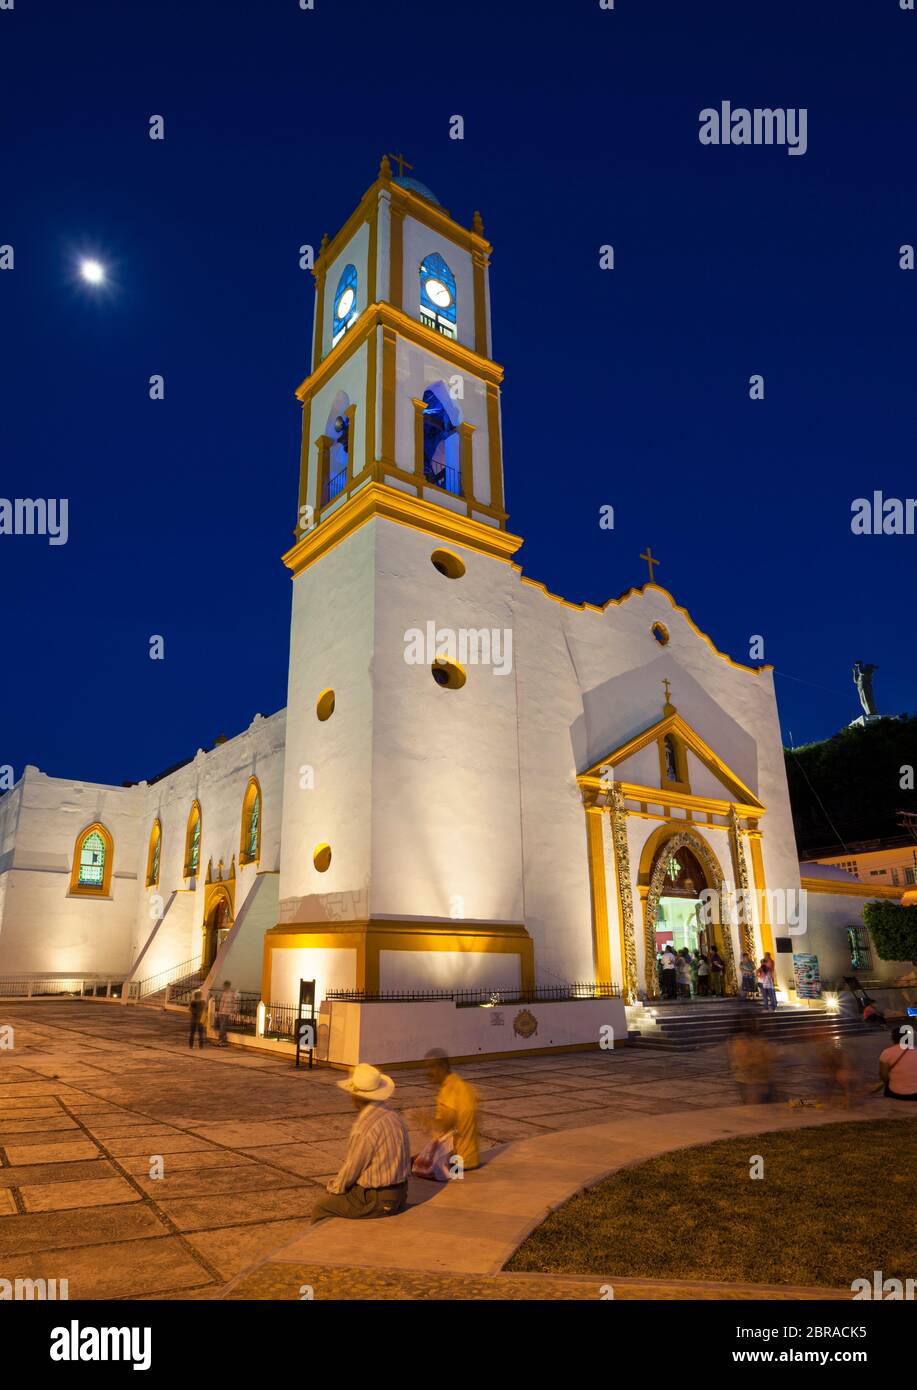 The church of Papantla, Veracruz, Mexico at twilight. Stock Photo